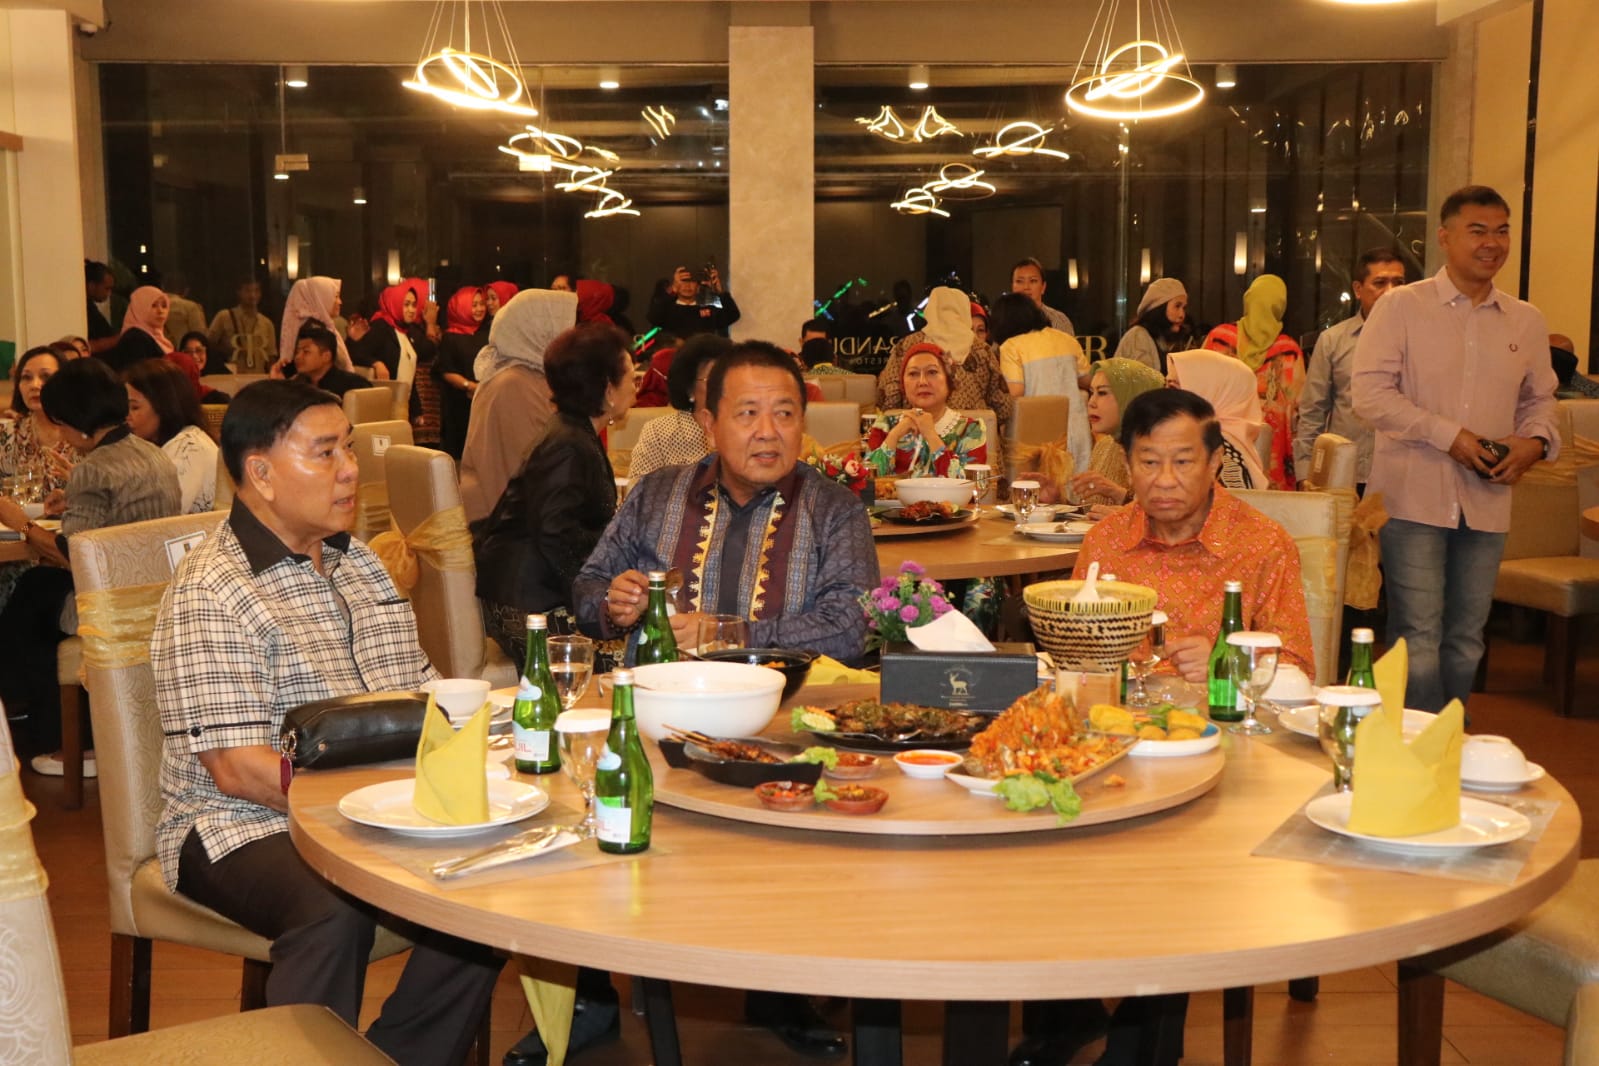 Gubernur Arinal Djunaidi Hadiri Kegiatan Ramah Tamah Bersama DPP Lampung Sai dan Forum Duta Besar